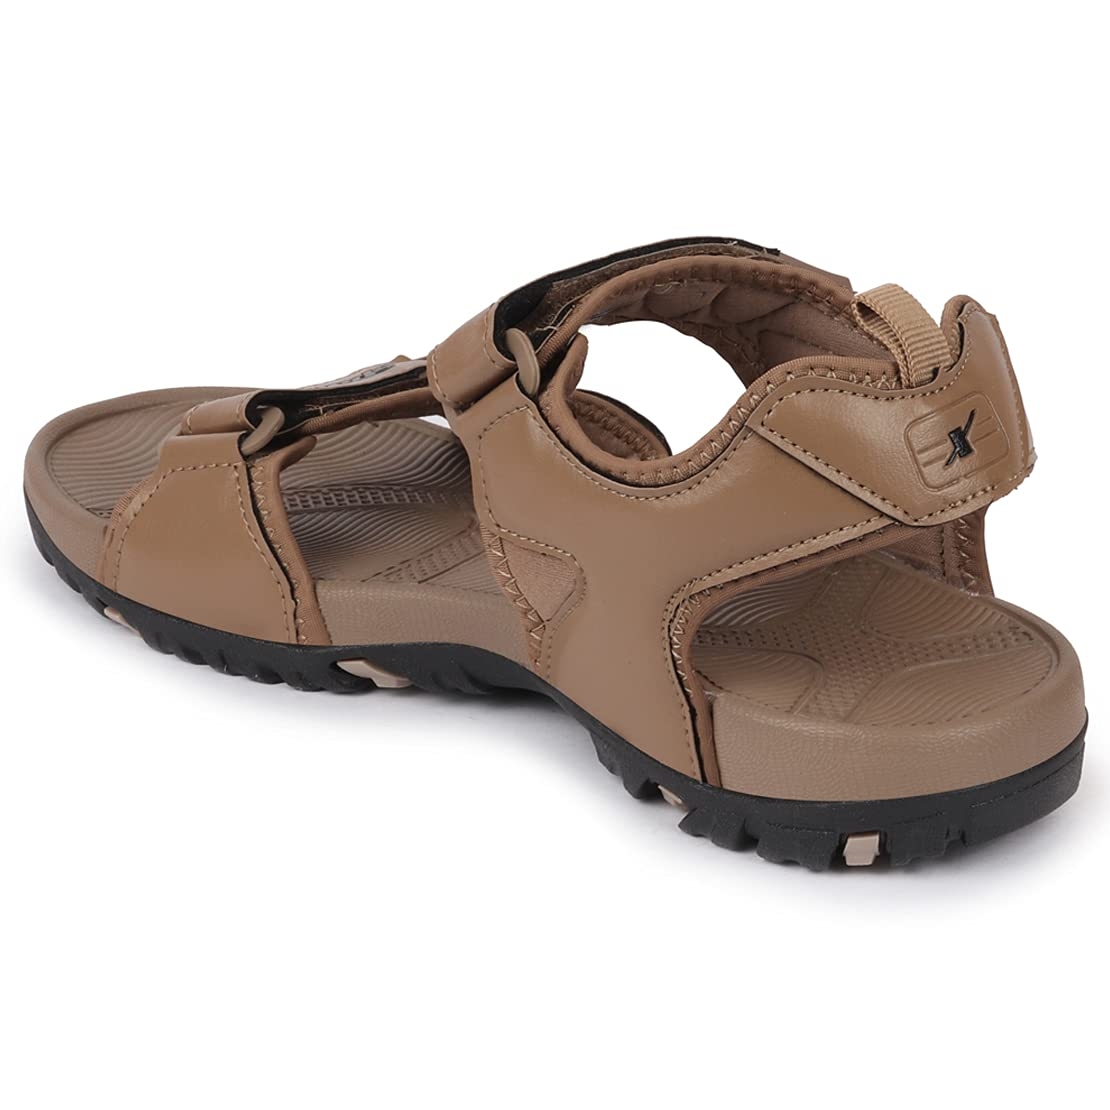 Buy Sparx Sparx Men Camel Brown Floater Sports Sandals at Redfynd